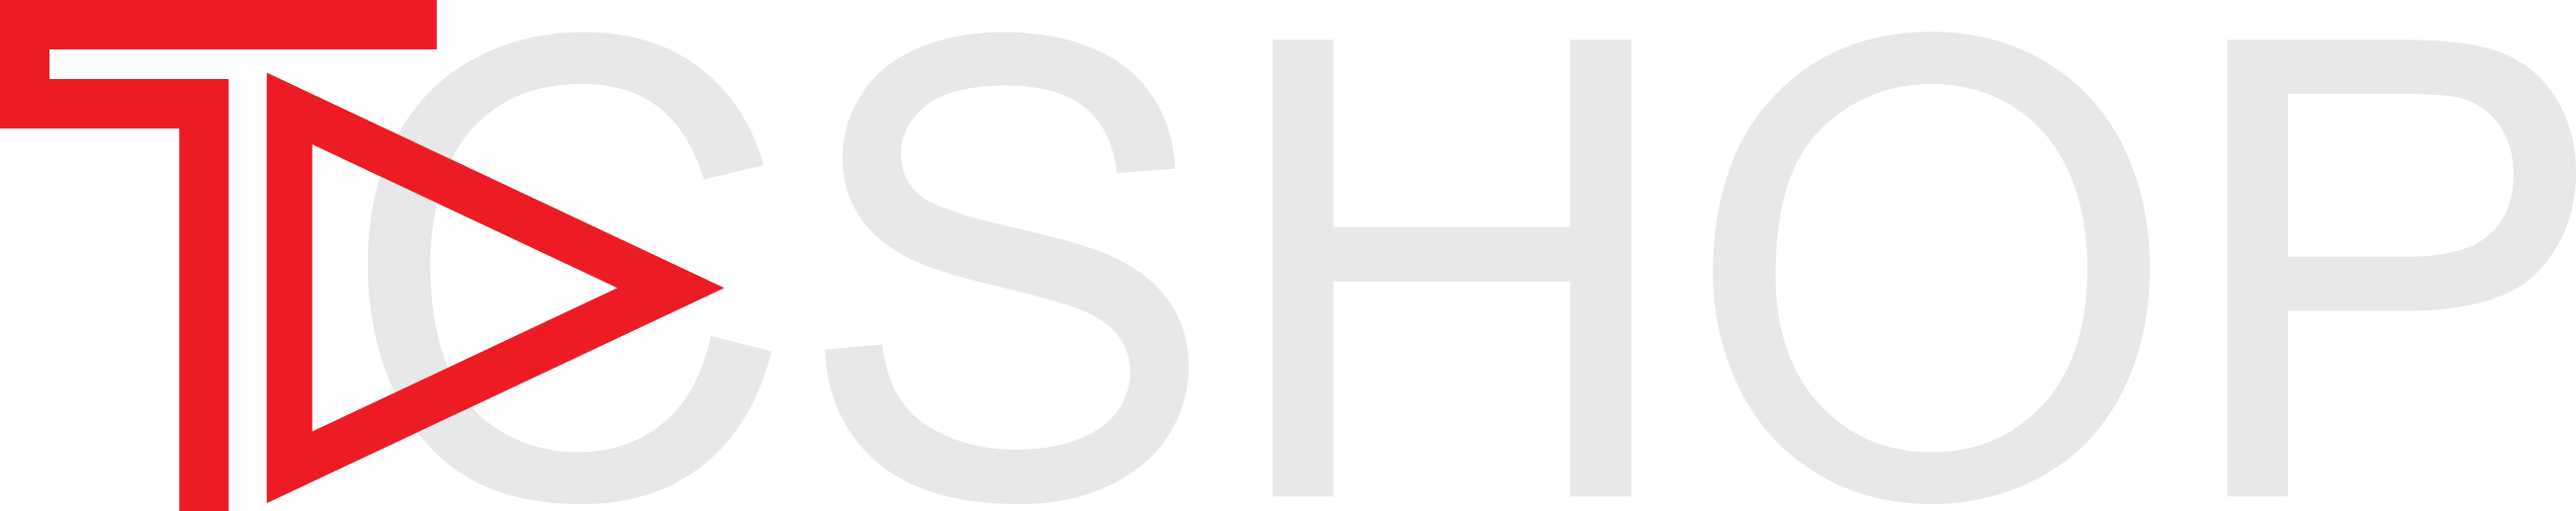 tcshop logo